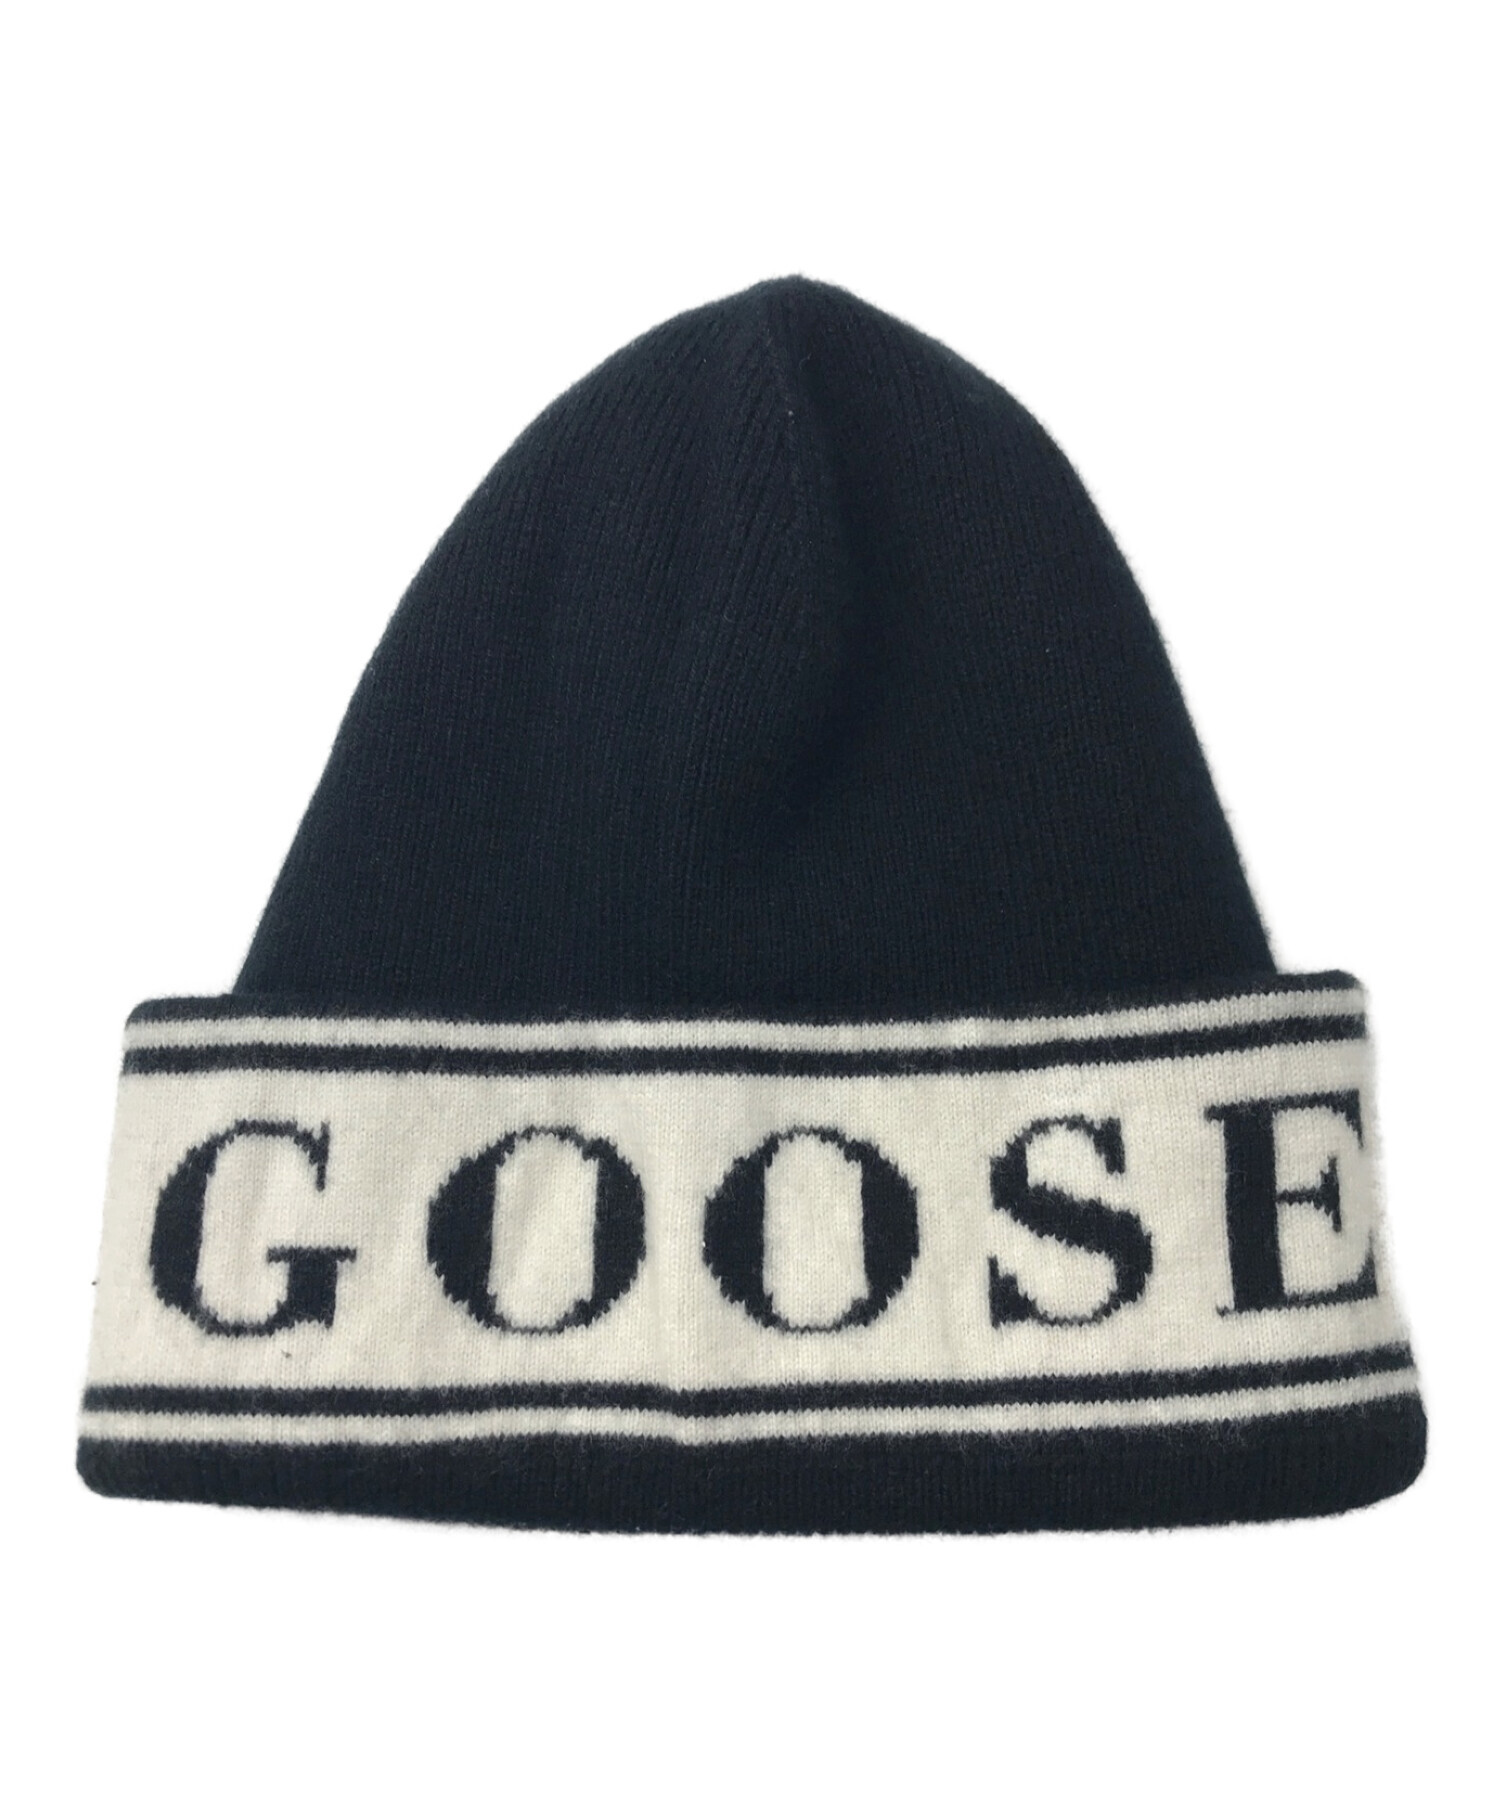 CANADA GOOSE (カナダグース) ロゴビーニー ニット帽 5511L ブラック